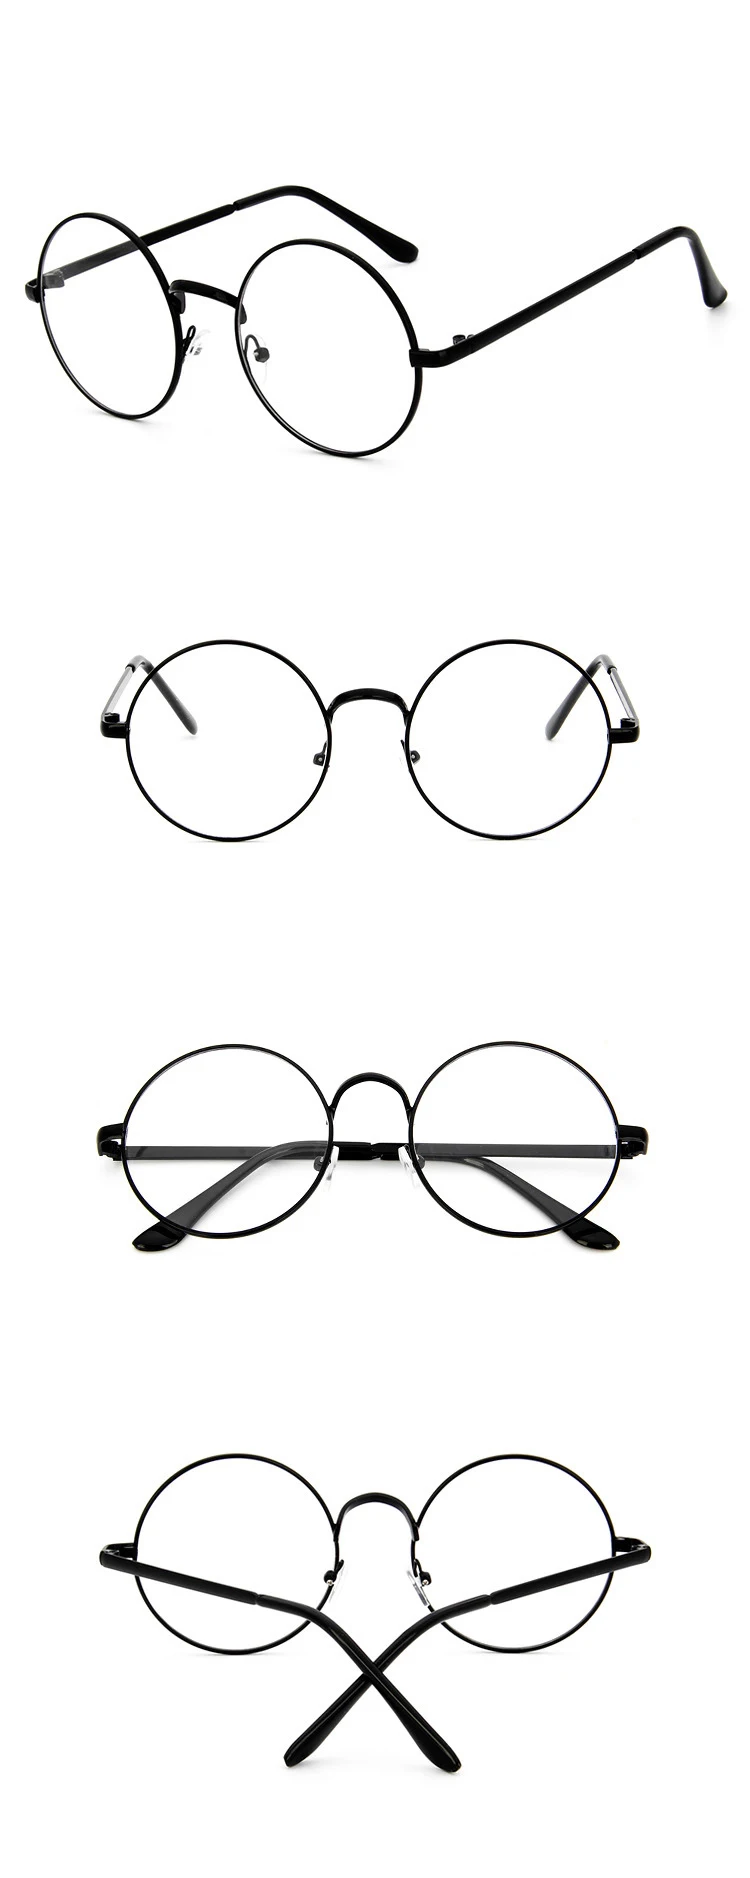 Zeontaat, черная круглая оправа для очков, прозрачные линзы, круглые очки, оправа для оптических очков, прозрачная оправа